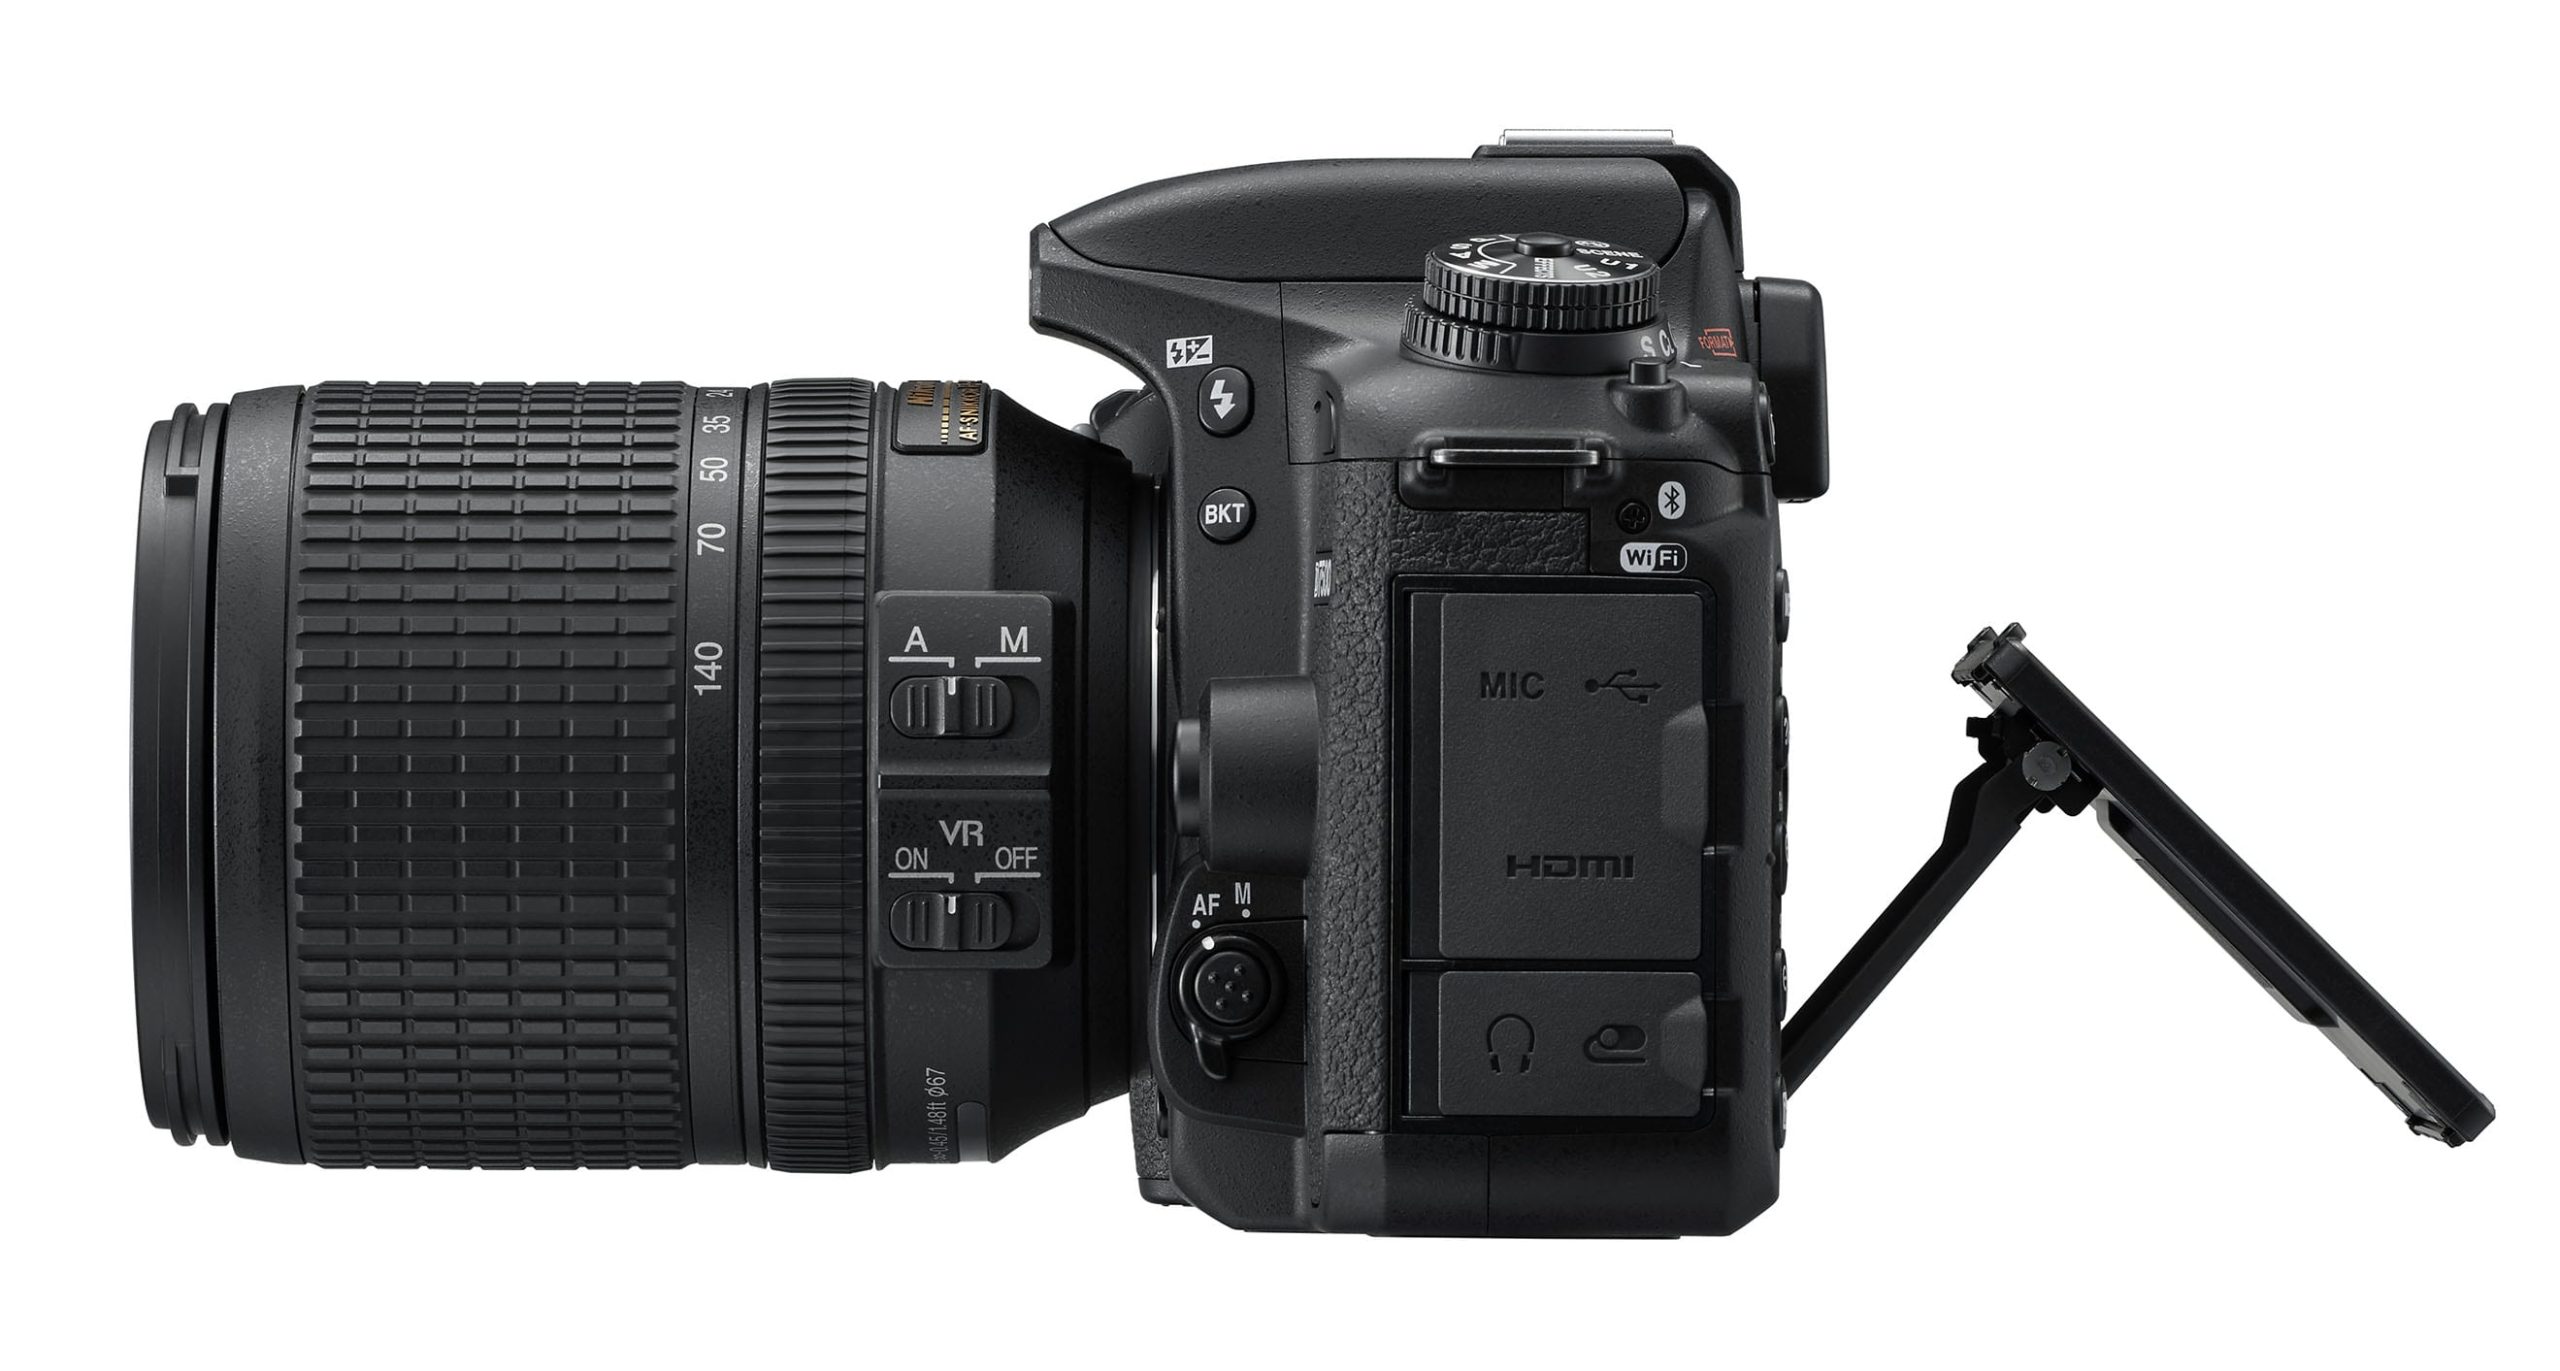 Nikon D7500 DSLR camera side view.